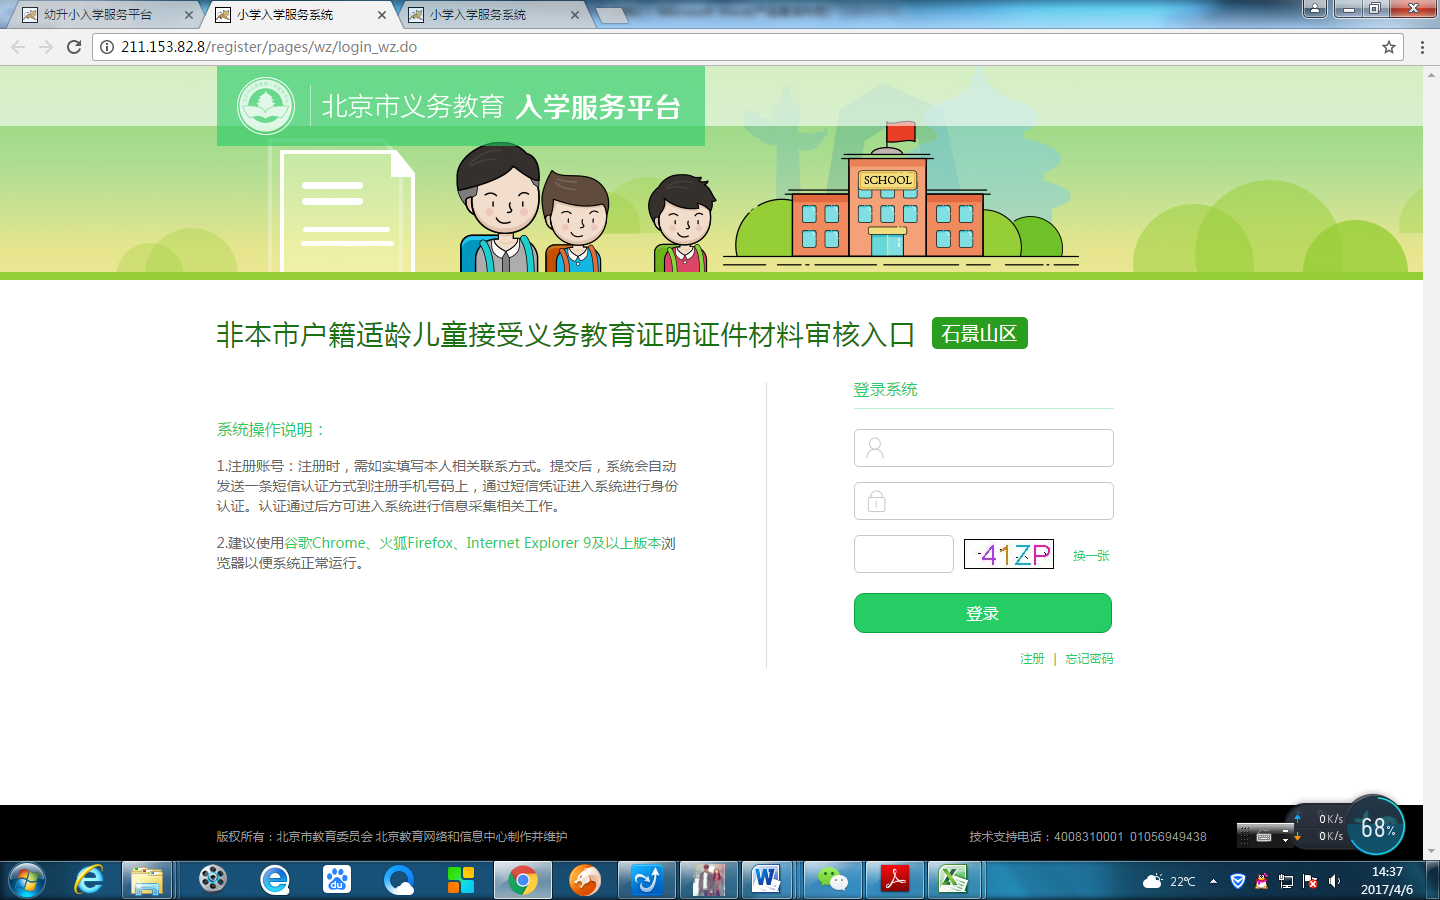 非北京市户籍适龄儿童入学信息采集流程图2